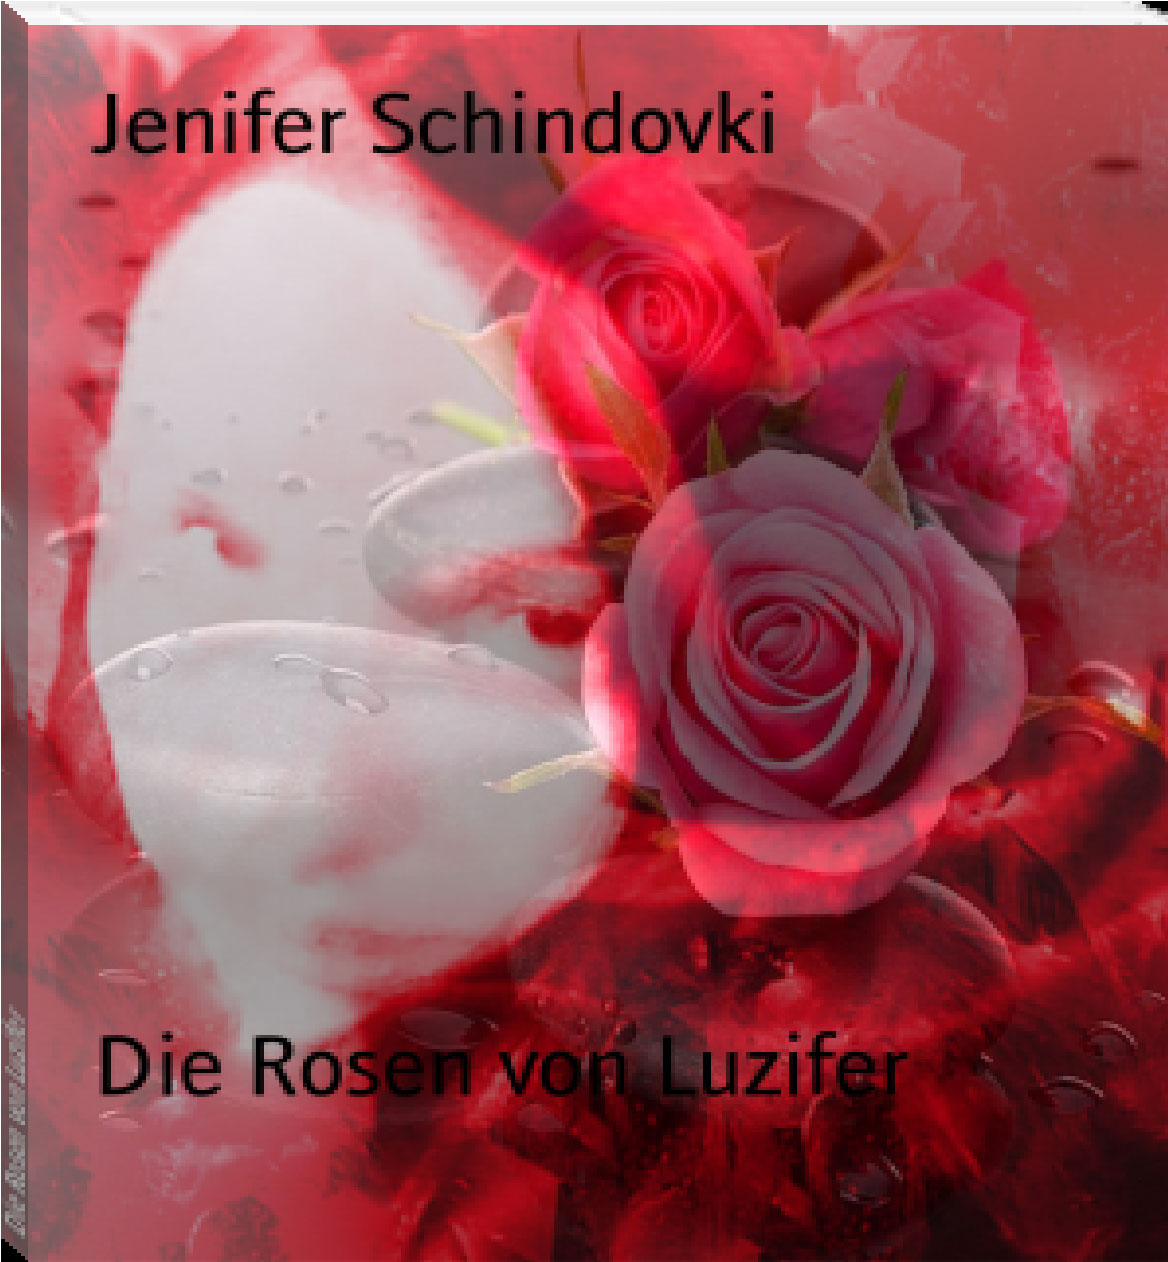 Die Rosen von Luzifer rendition image